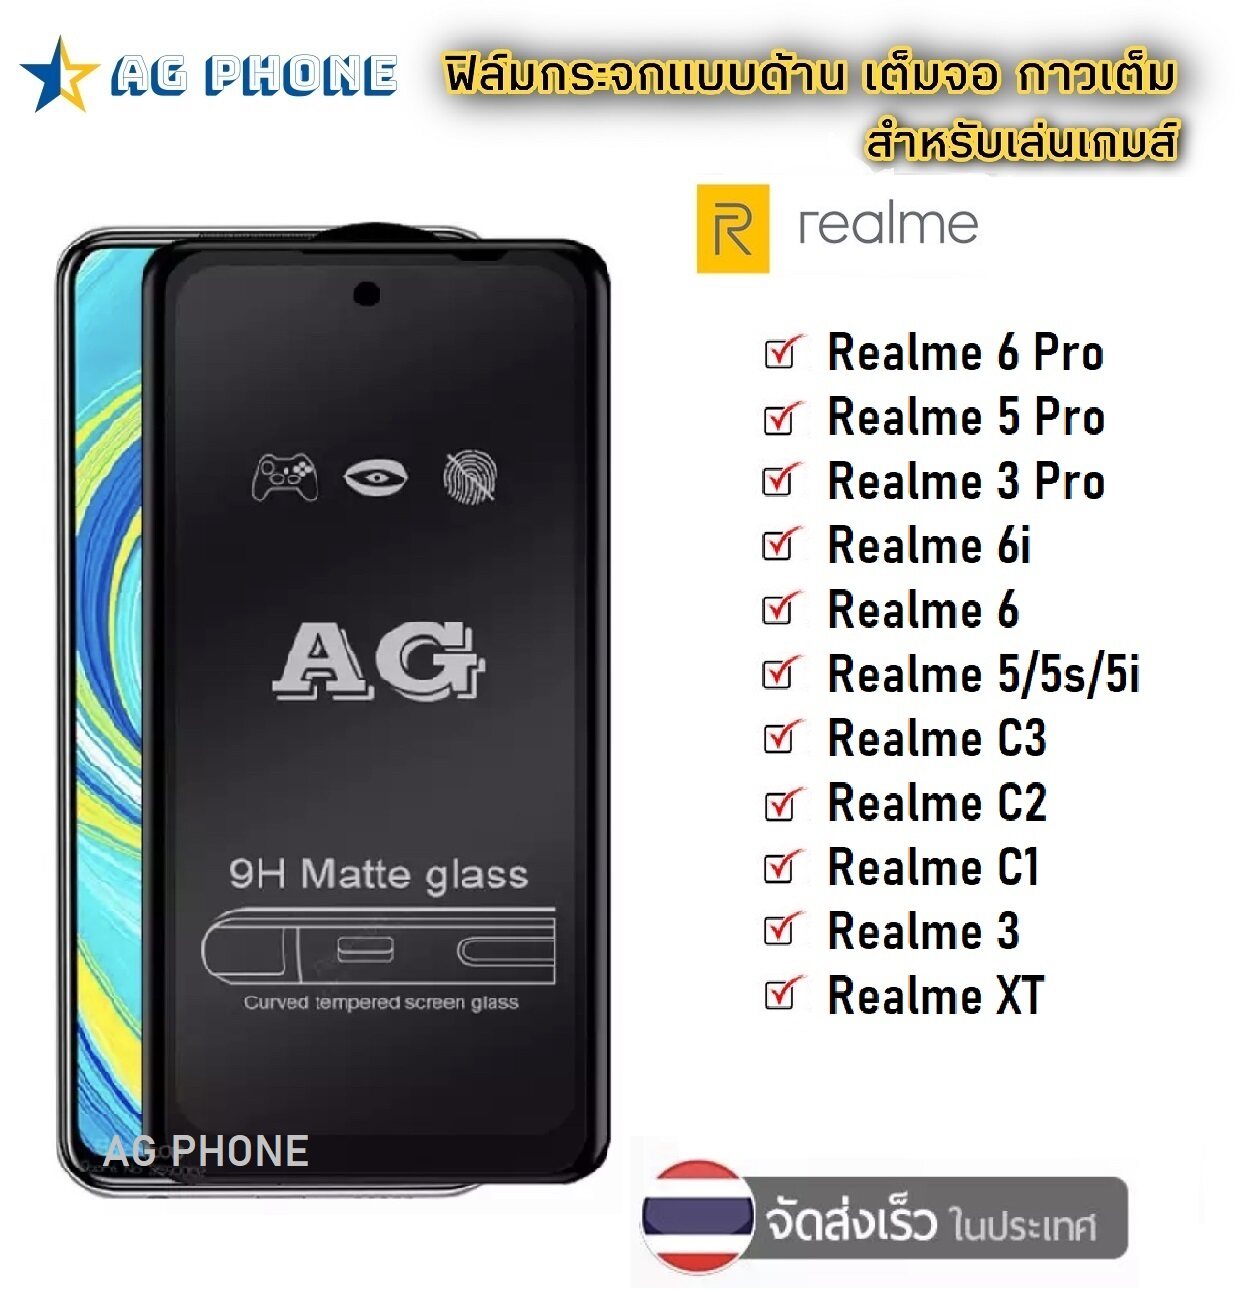 ฟิล์มกระจกเต็มจอแบบด้าน ฟิล์มเล่นเกมส์ Realme 5/5s/5i / Realme 5 Pro / Realme 3 / Realme 3 Pro / Realme 6 / Realme 6i / Realme 6 Pro / Realme C1 / C2 / C3 ฟิล์มกระจกแบบเต็มจอ ฟิล์ม ราคาถูก ฟิล์มด้าน AG